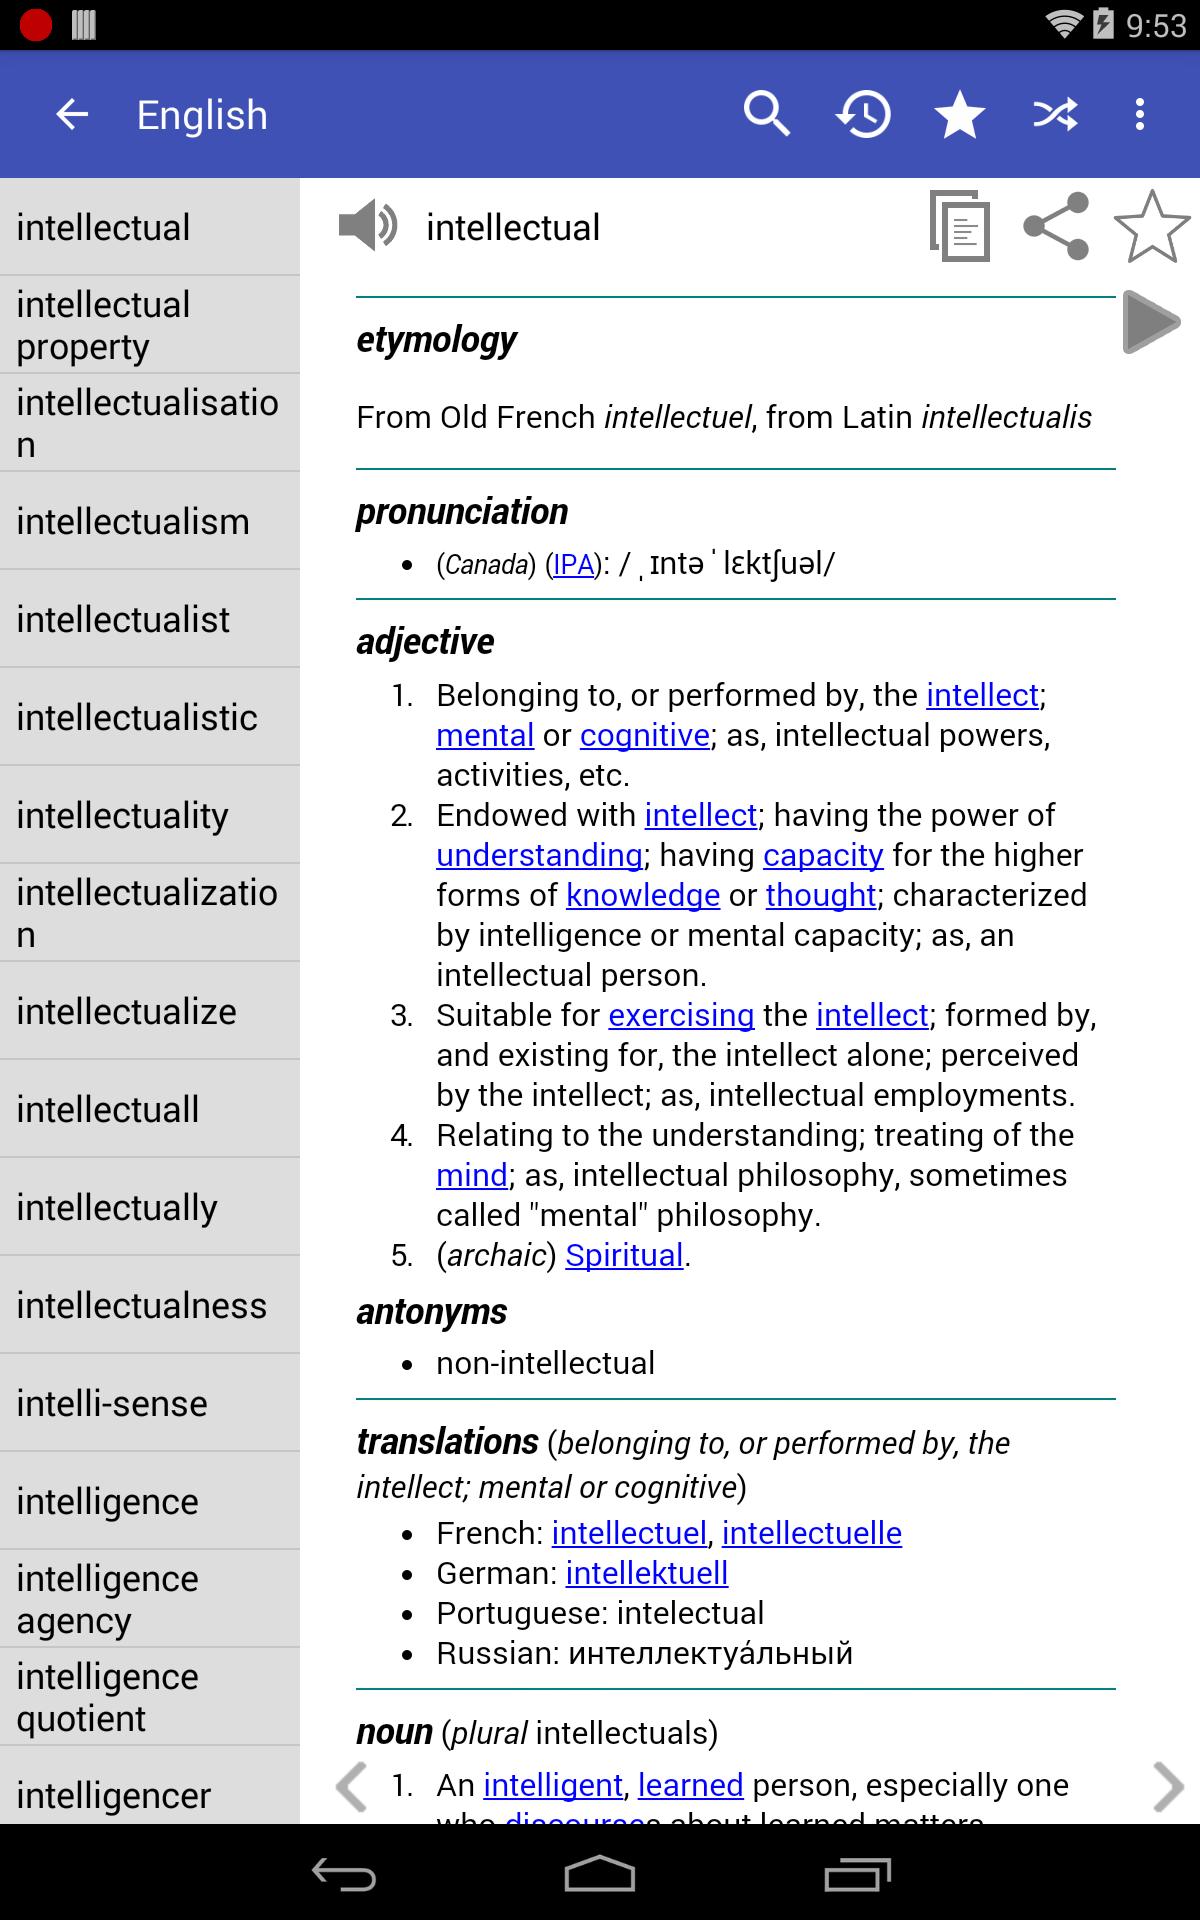 English Dictionary - Offline 5.1 Screenshot 17